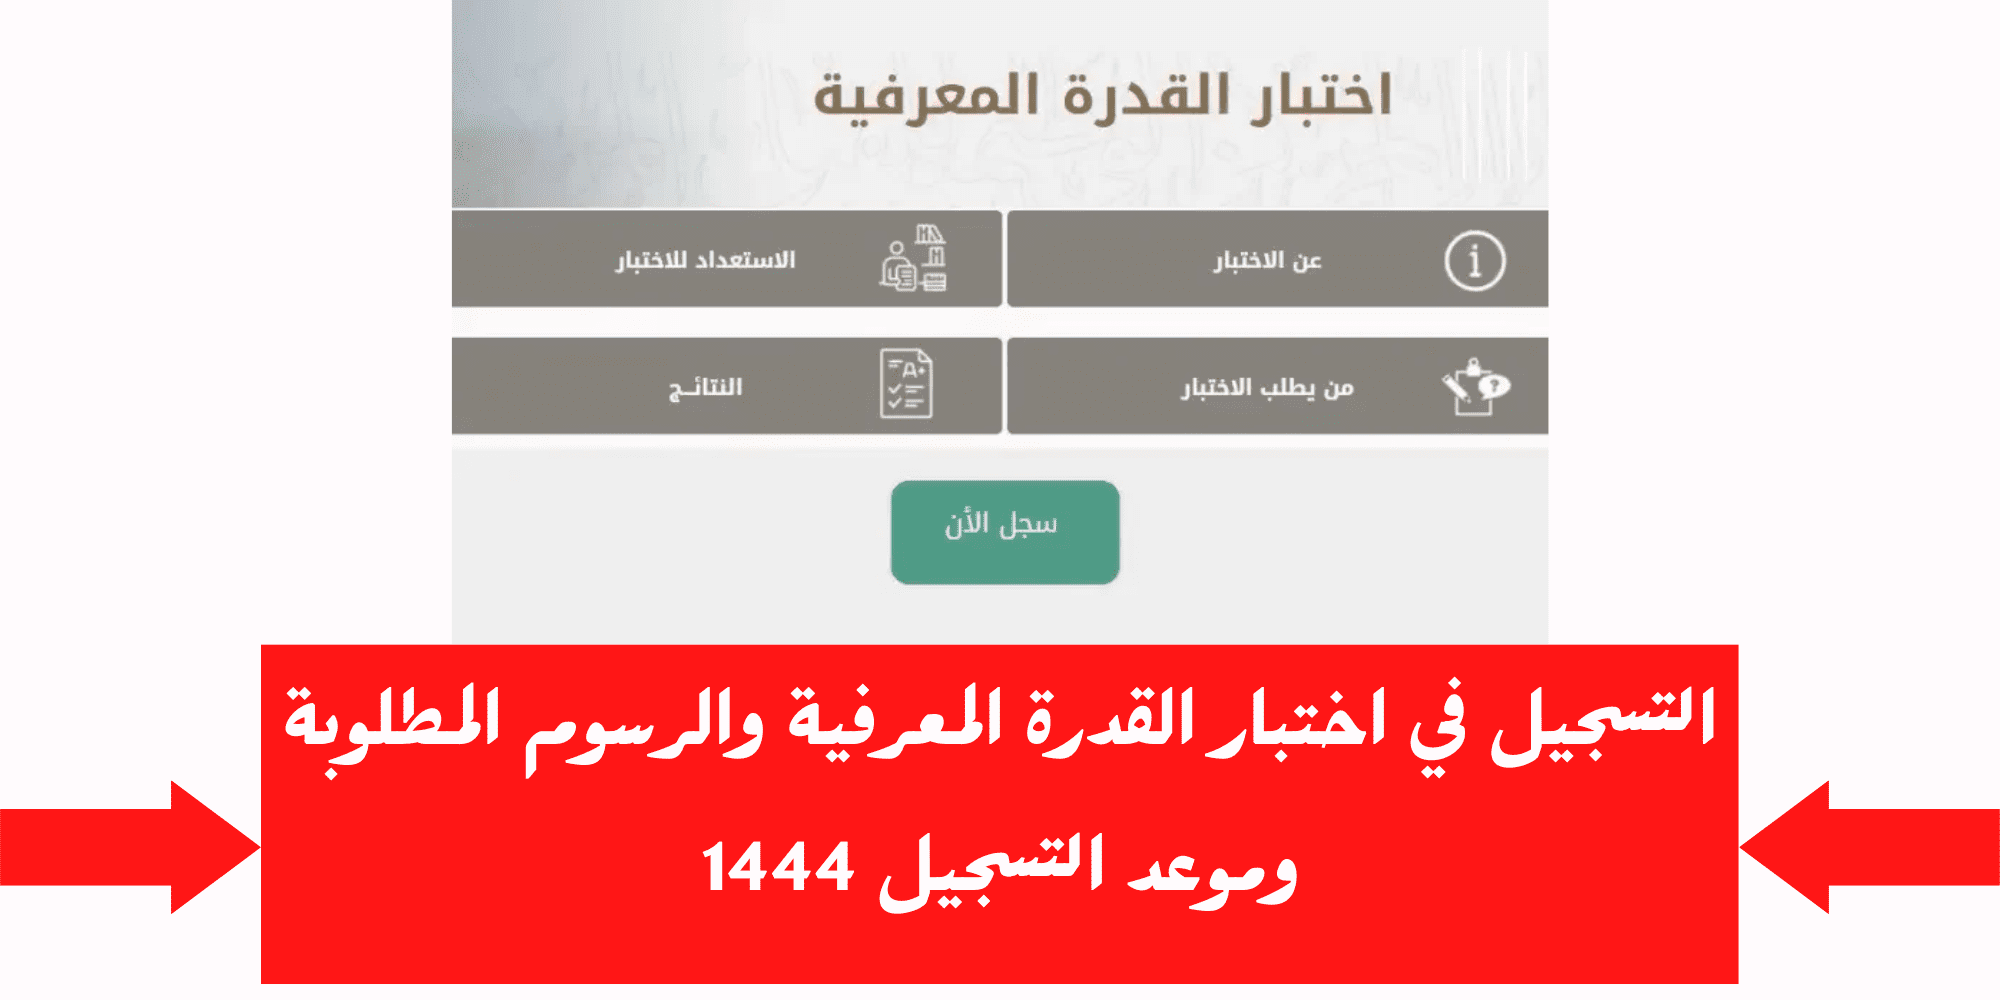 4ففف - مدونة التقنية العربية